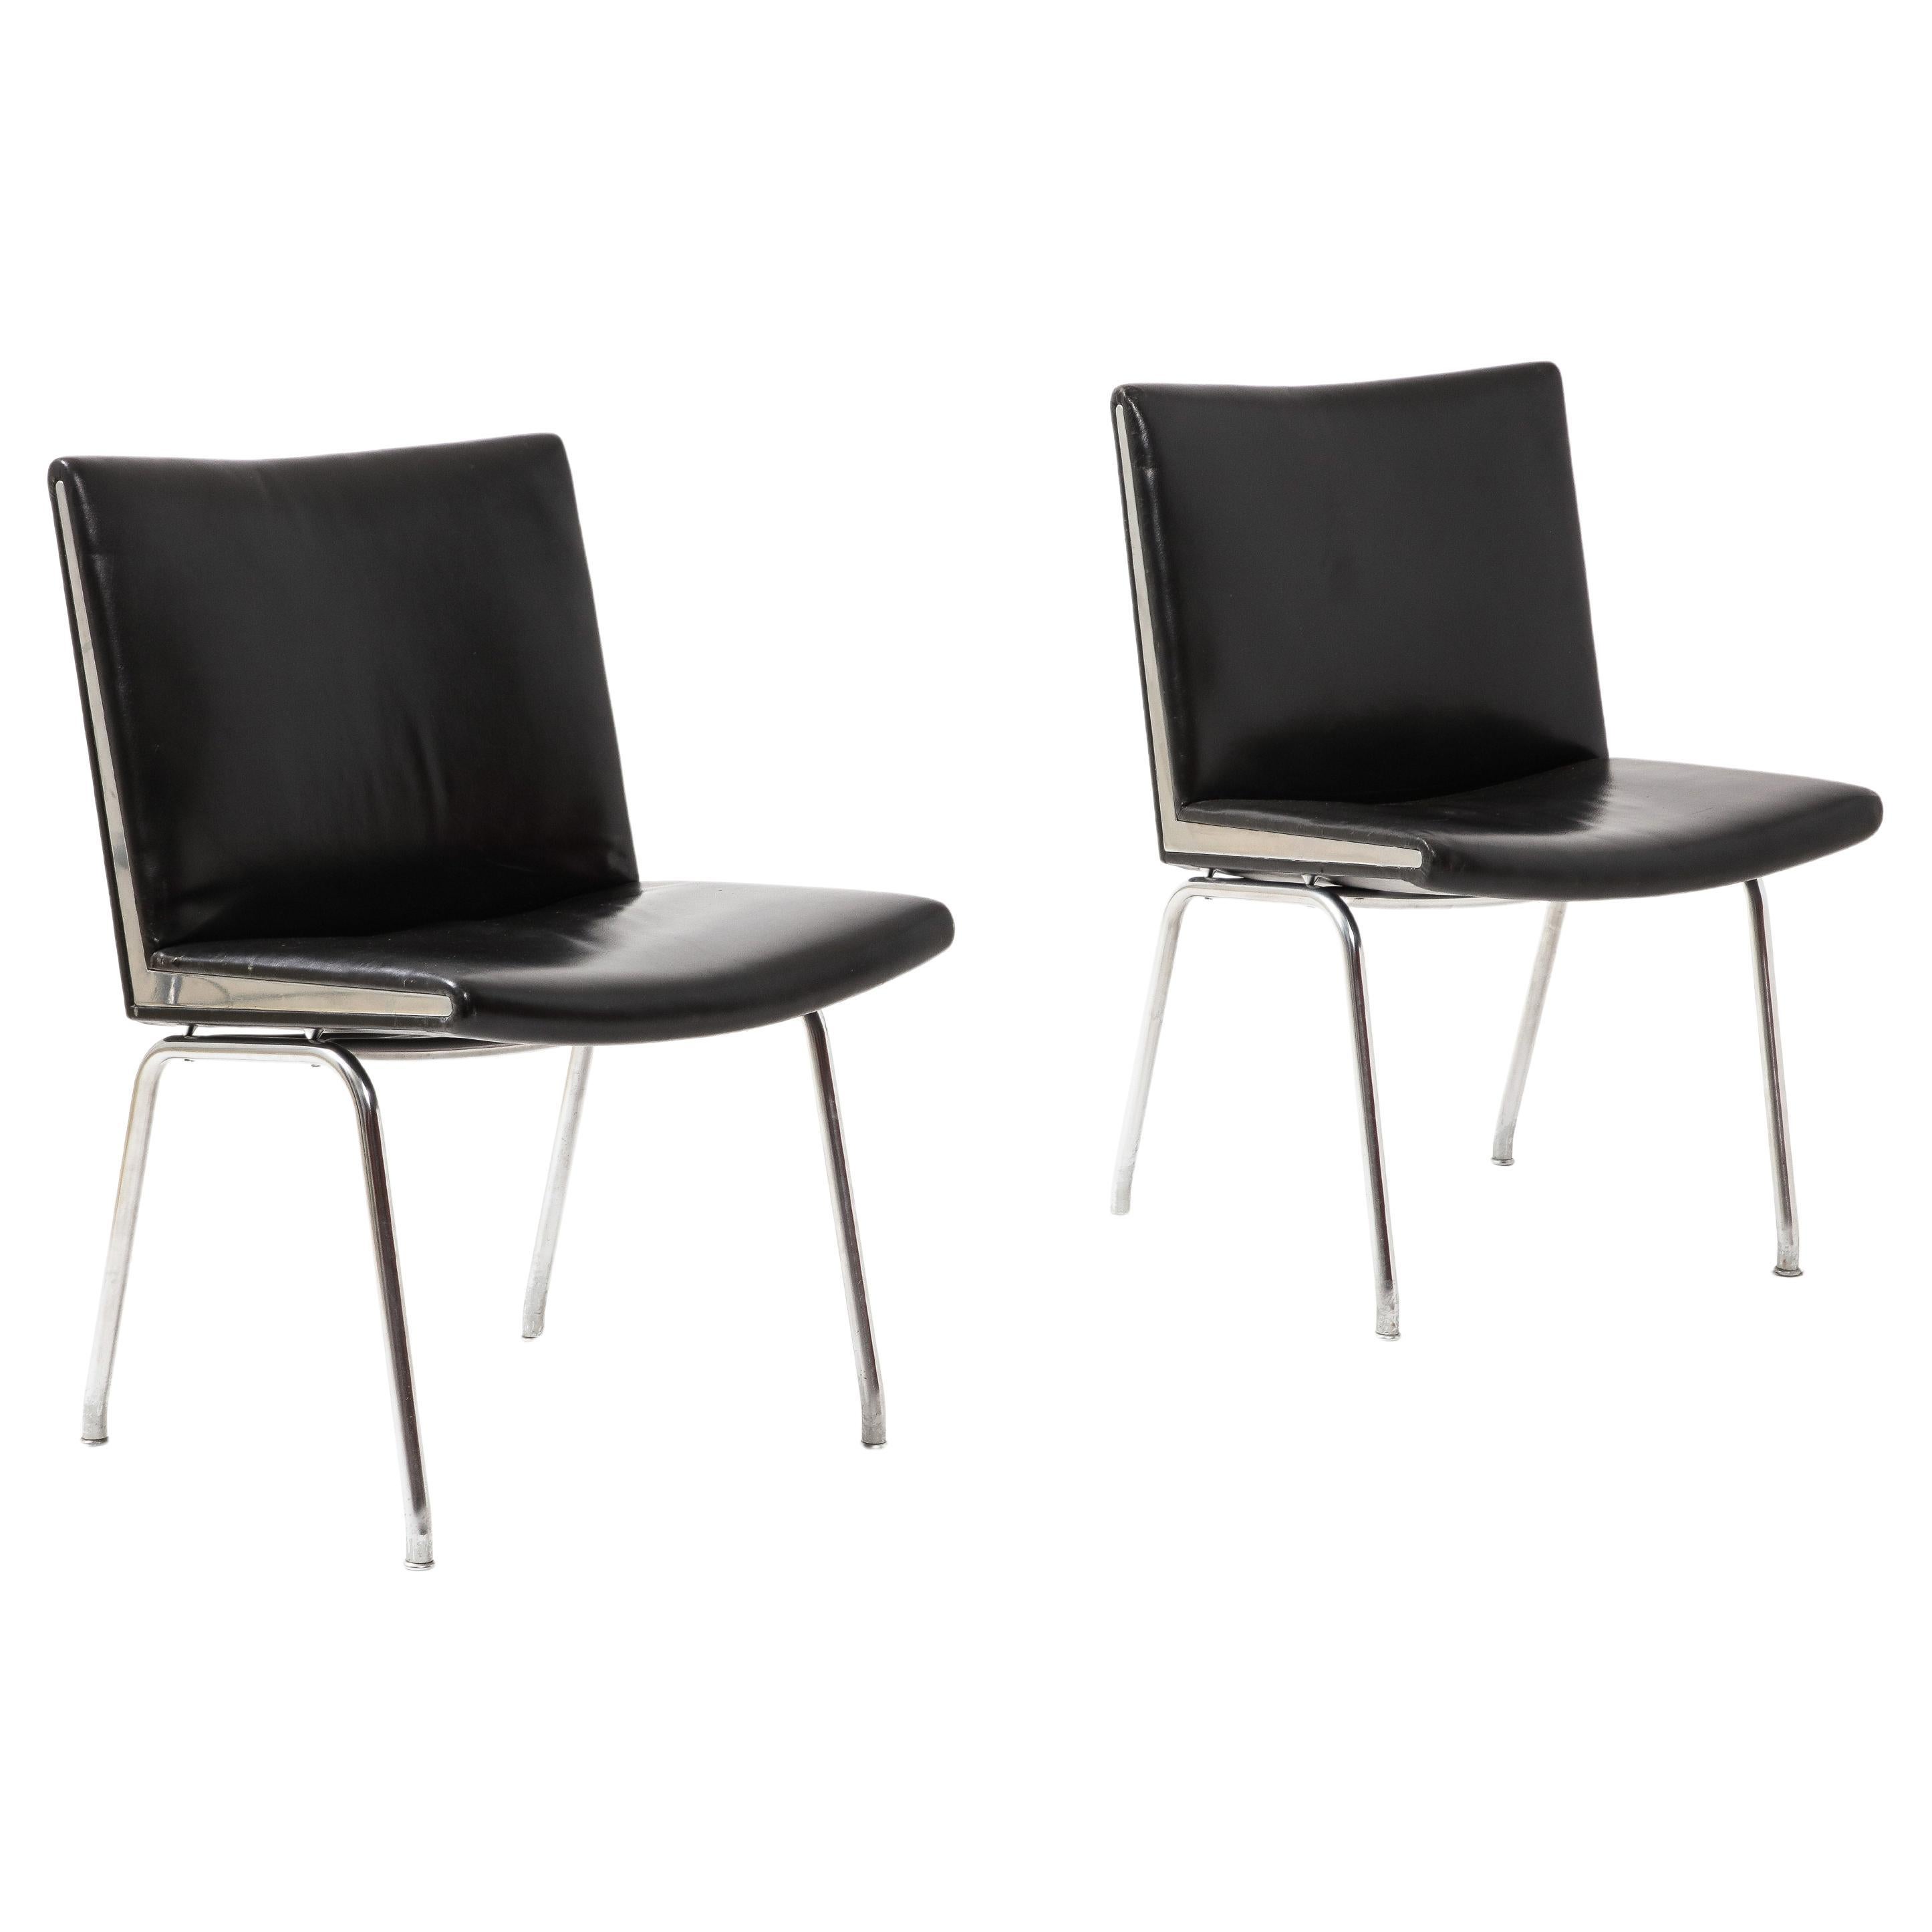 Ein Paar original schwarzes Leder und verchromter Stahl.

Stühle 